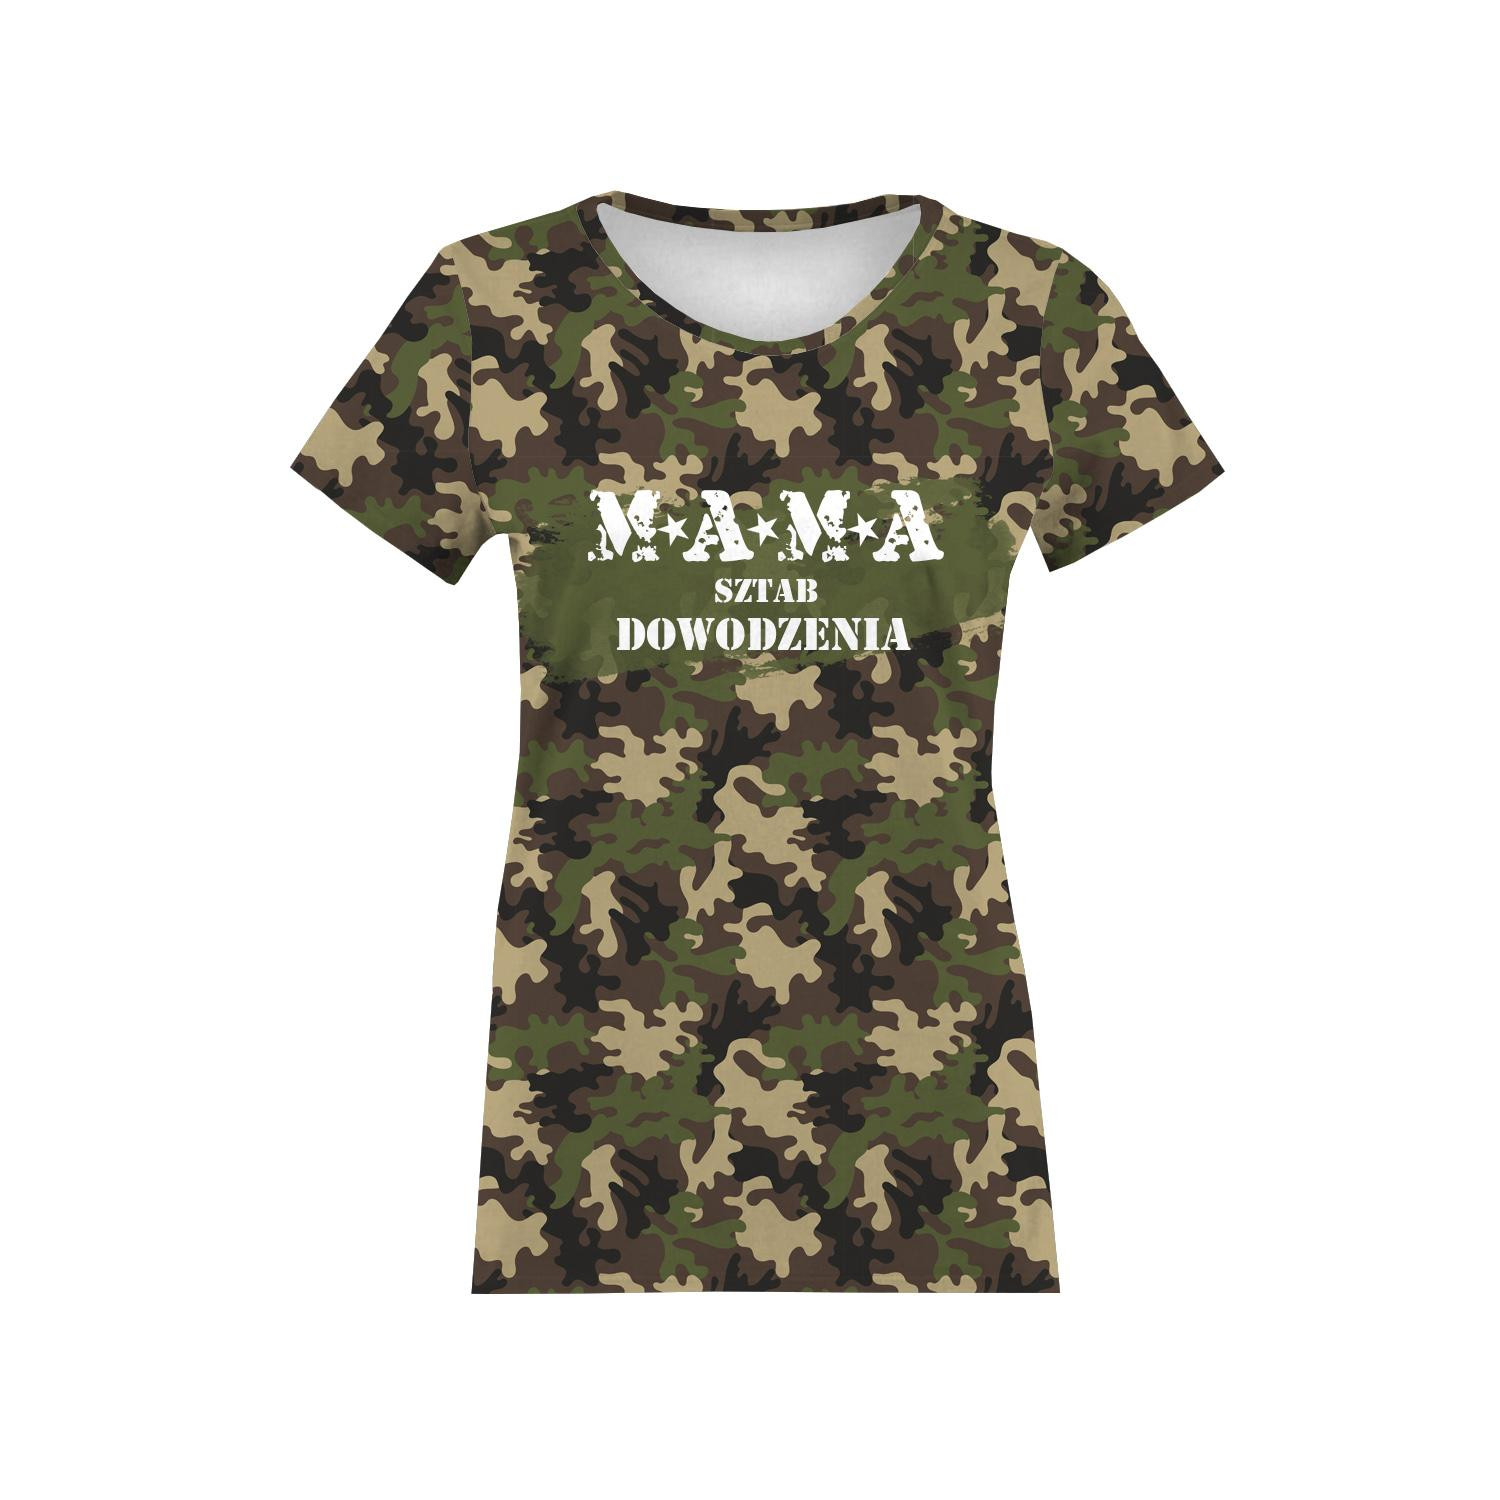 WOMEN’S T-SHIRT - MAMA / CAMOUFLAGE - single jersey